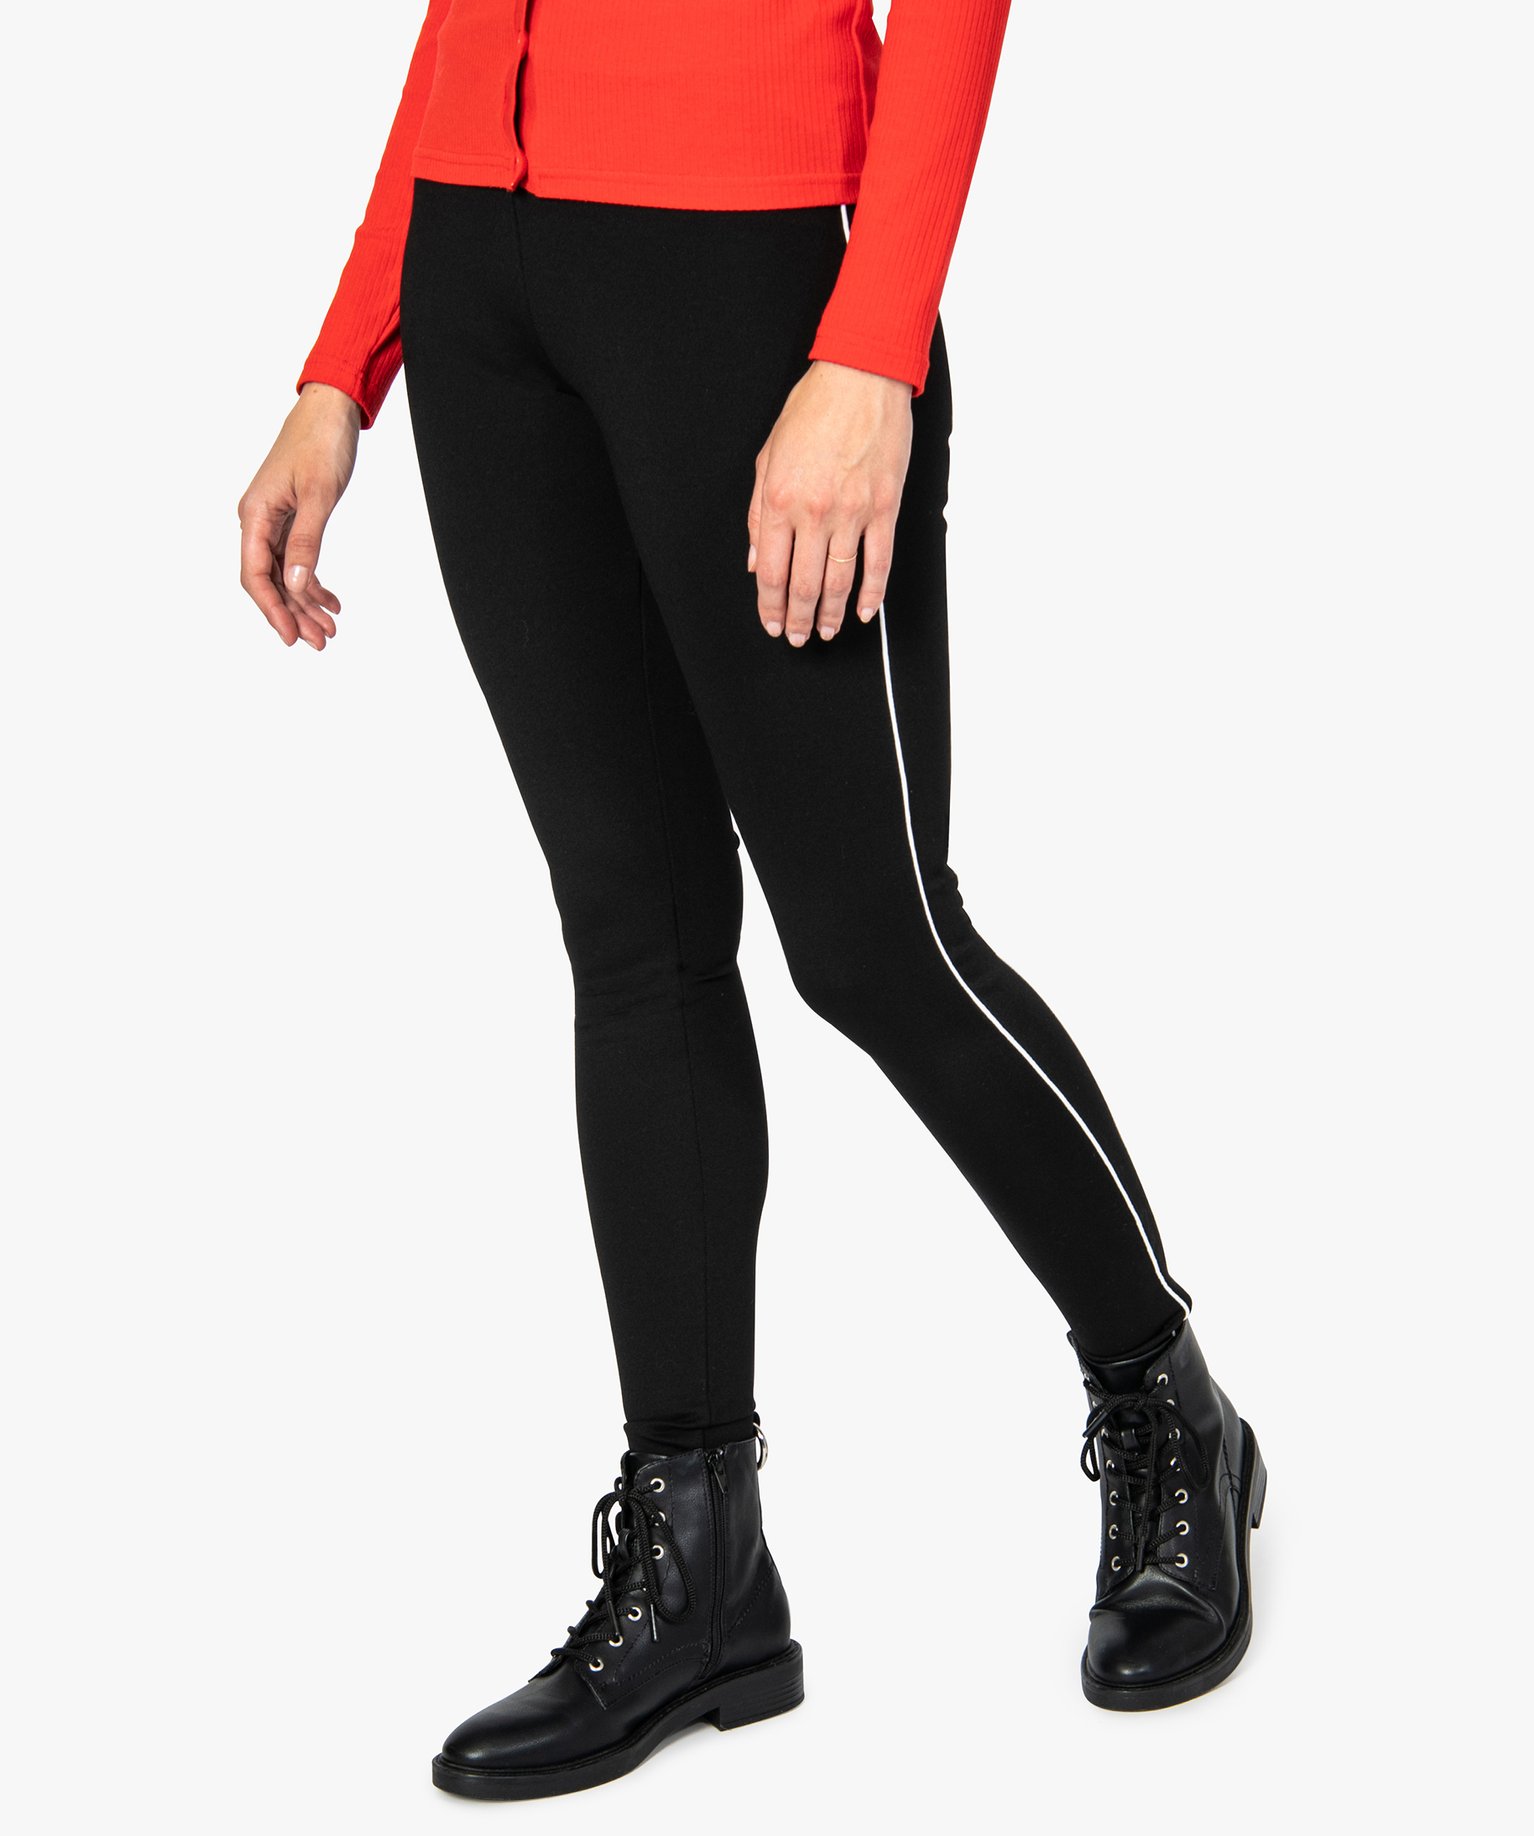 pantalon femme moulant a taille elastique et lisere contrastant noir leggings et jeggings